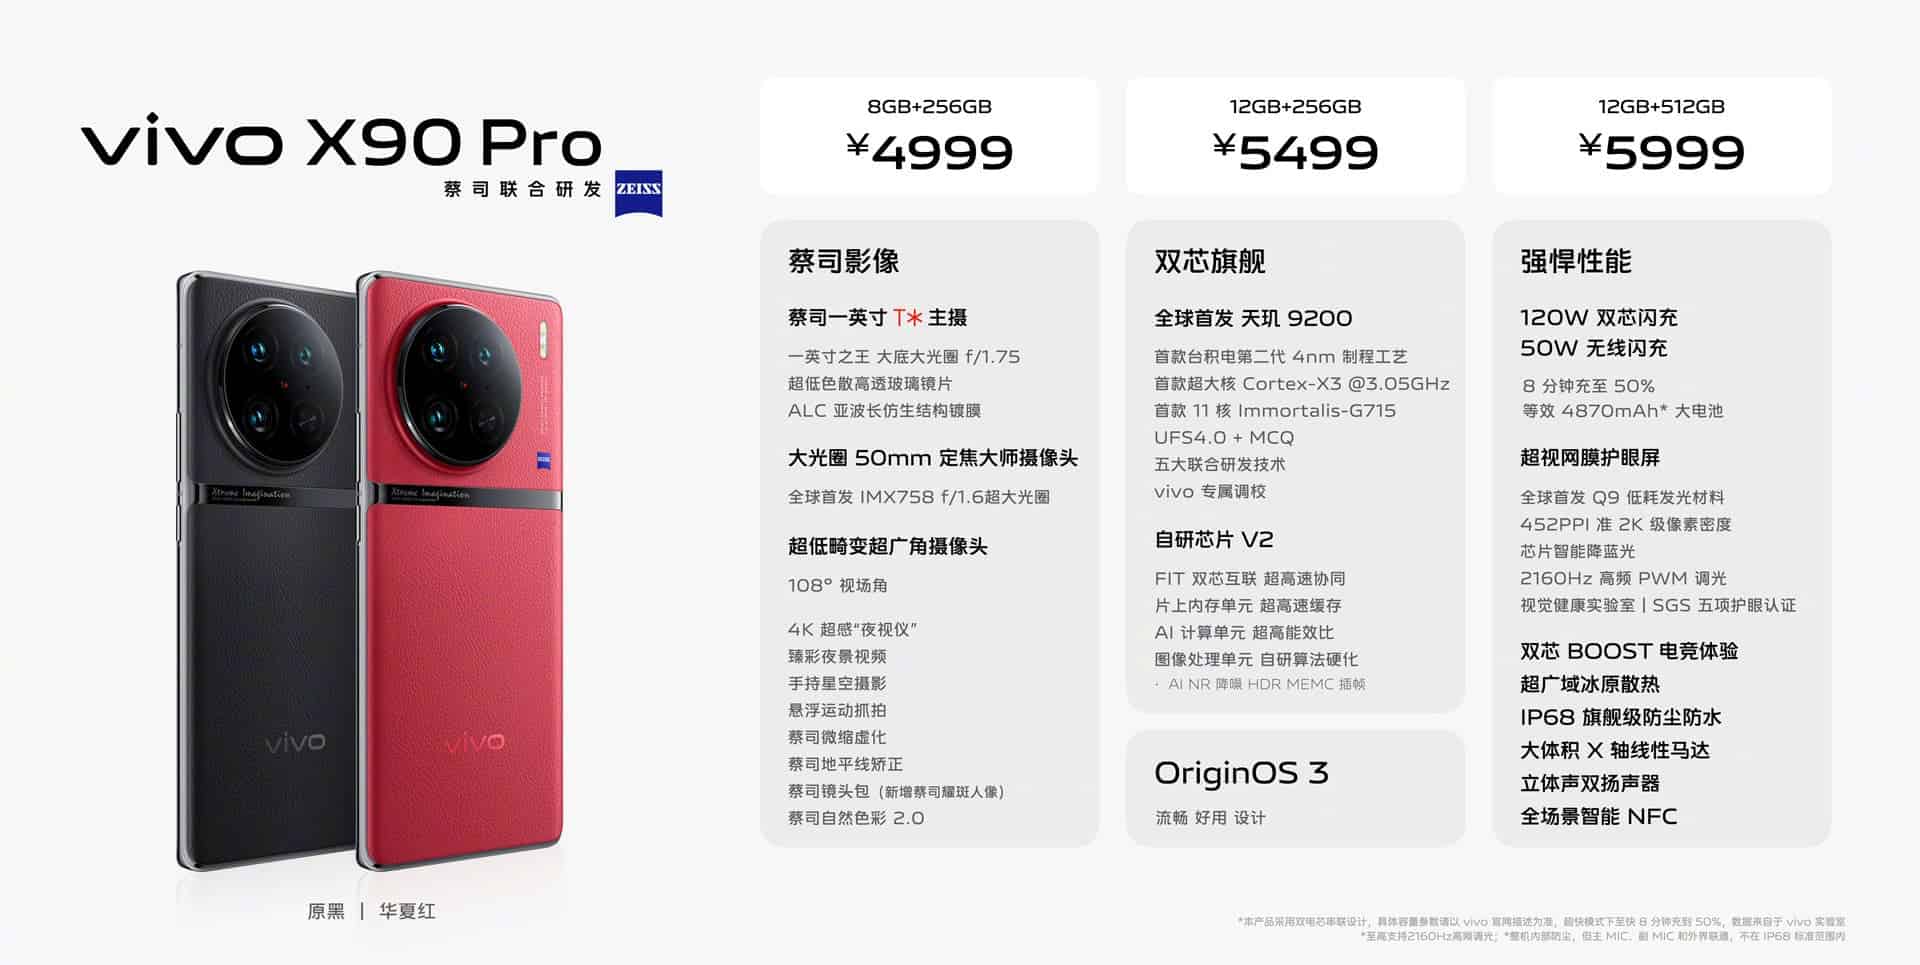 Precios VIVO X90 Pro